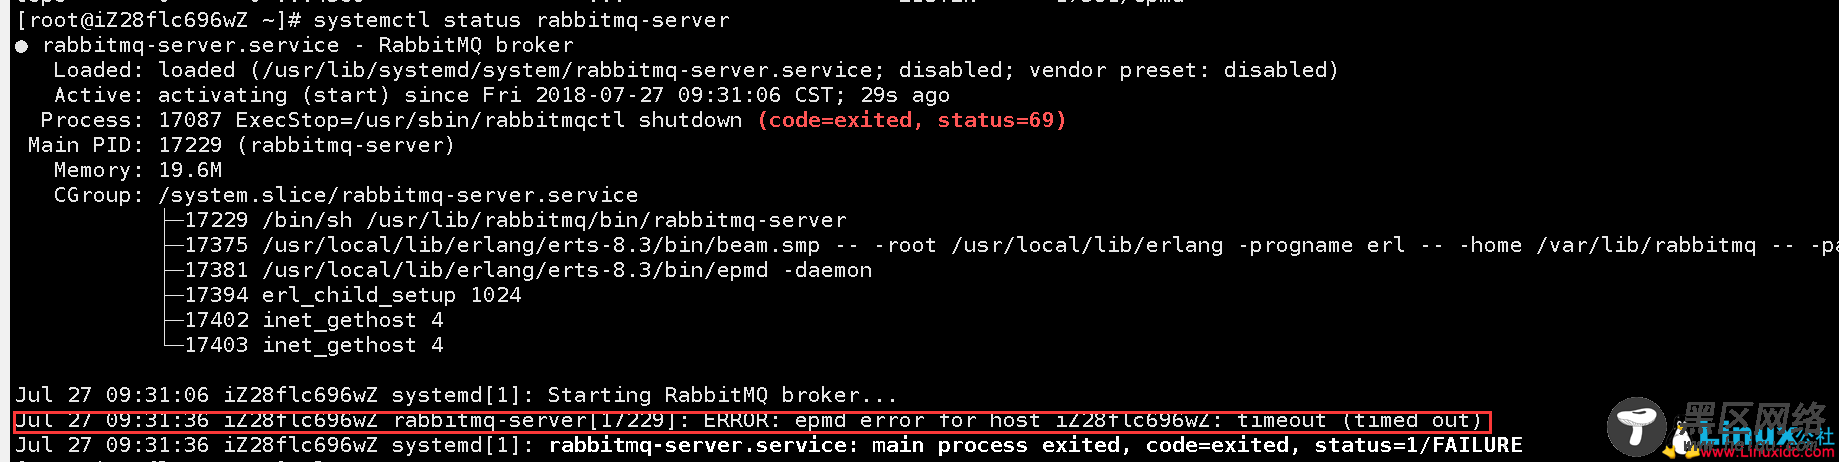 CentOS7安装RabbitMQ3.7.6遇到的问题及解决